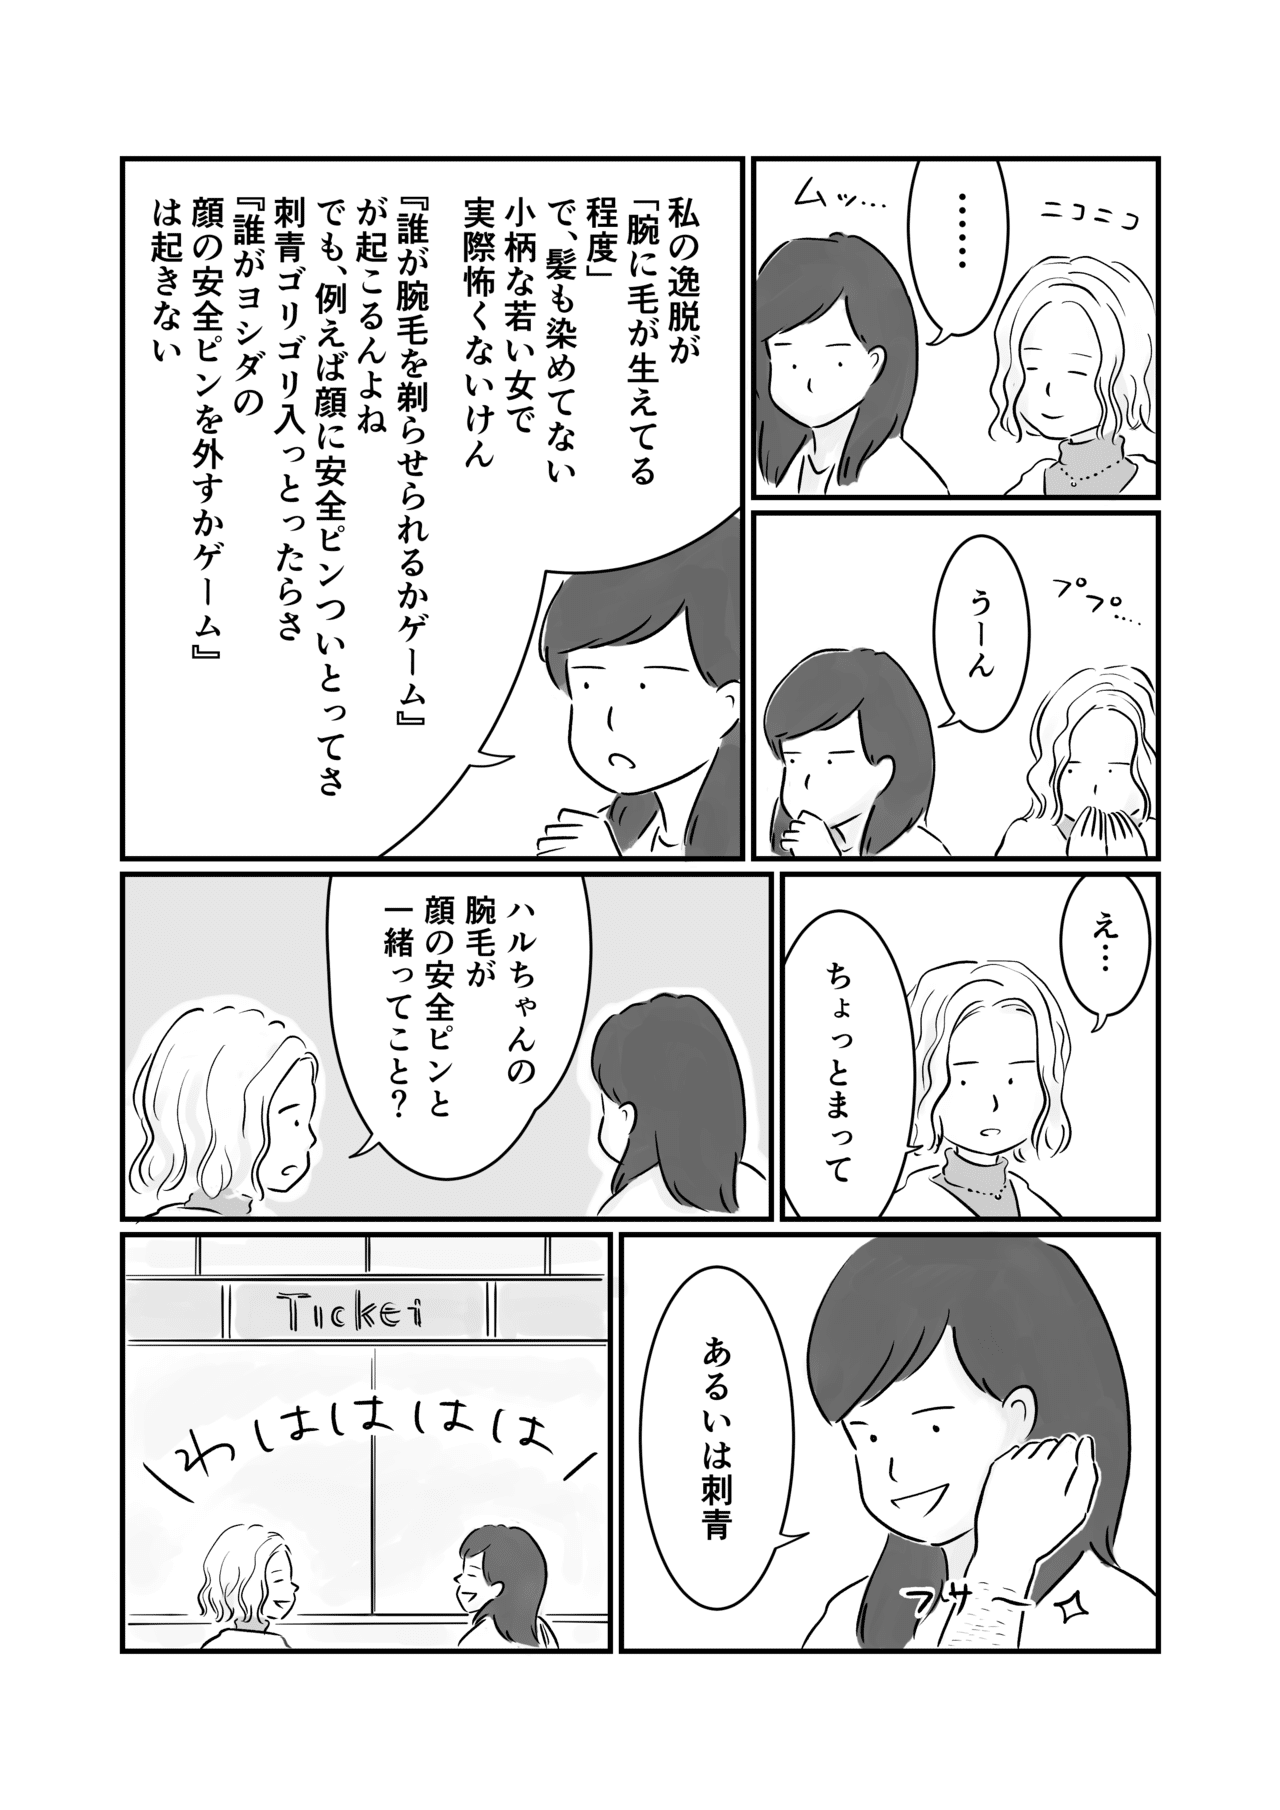 コミック5_出力_004